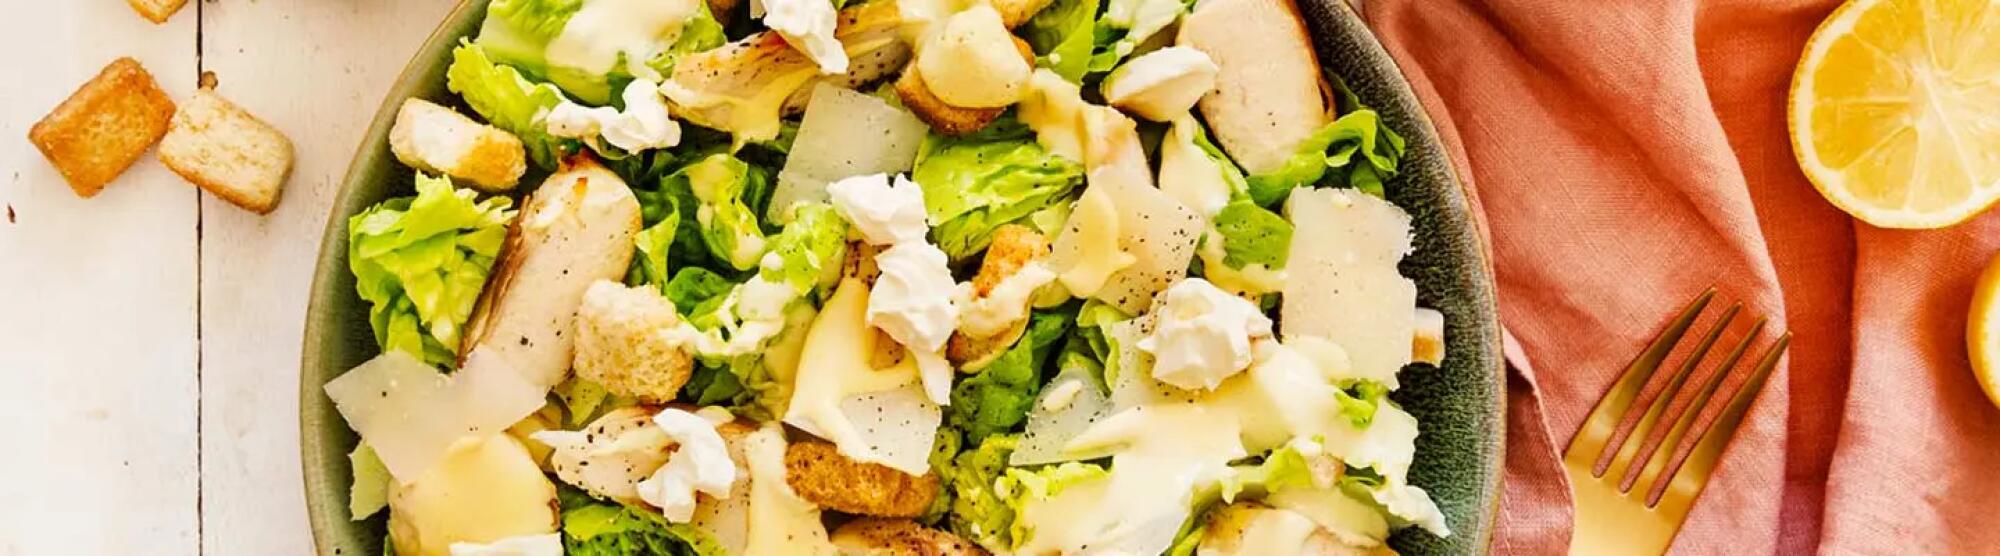 Recette : Salade césar au poulet, sauce au fromage frais